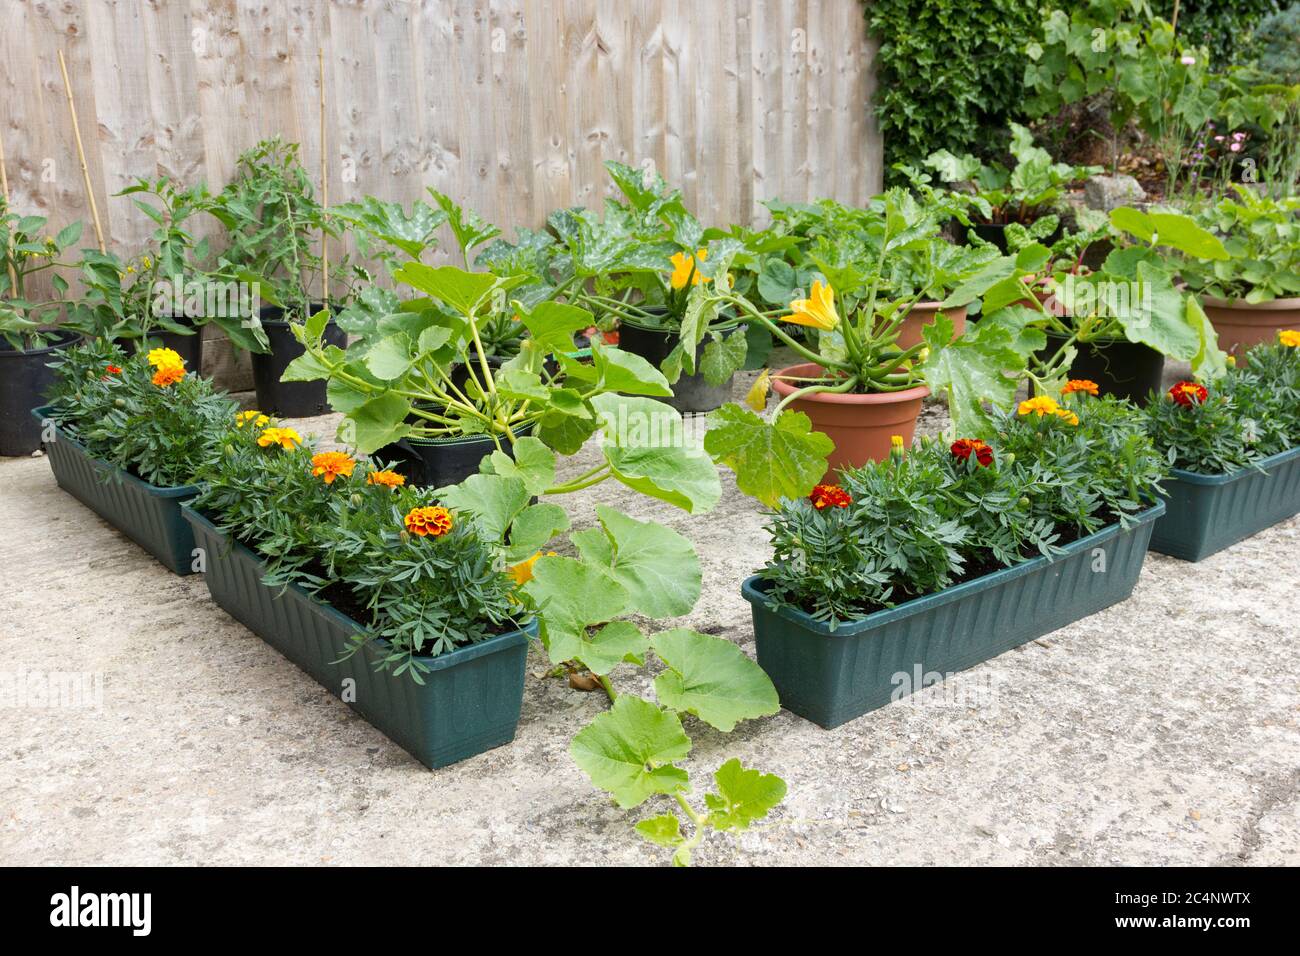 Giardinaggio vegetale biologico in pentole e contenitori Foto Stock